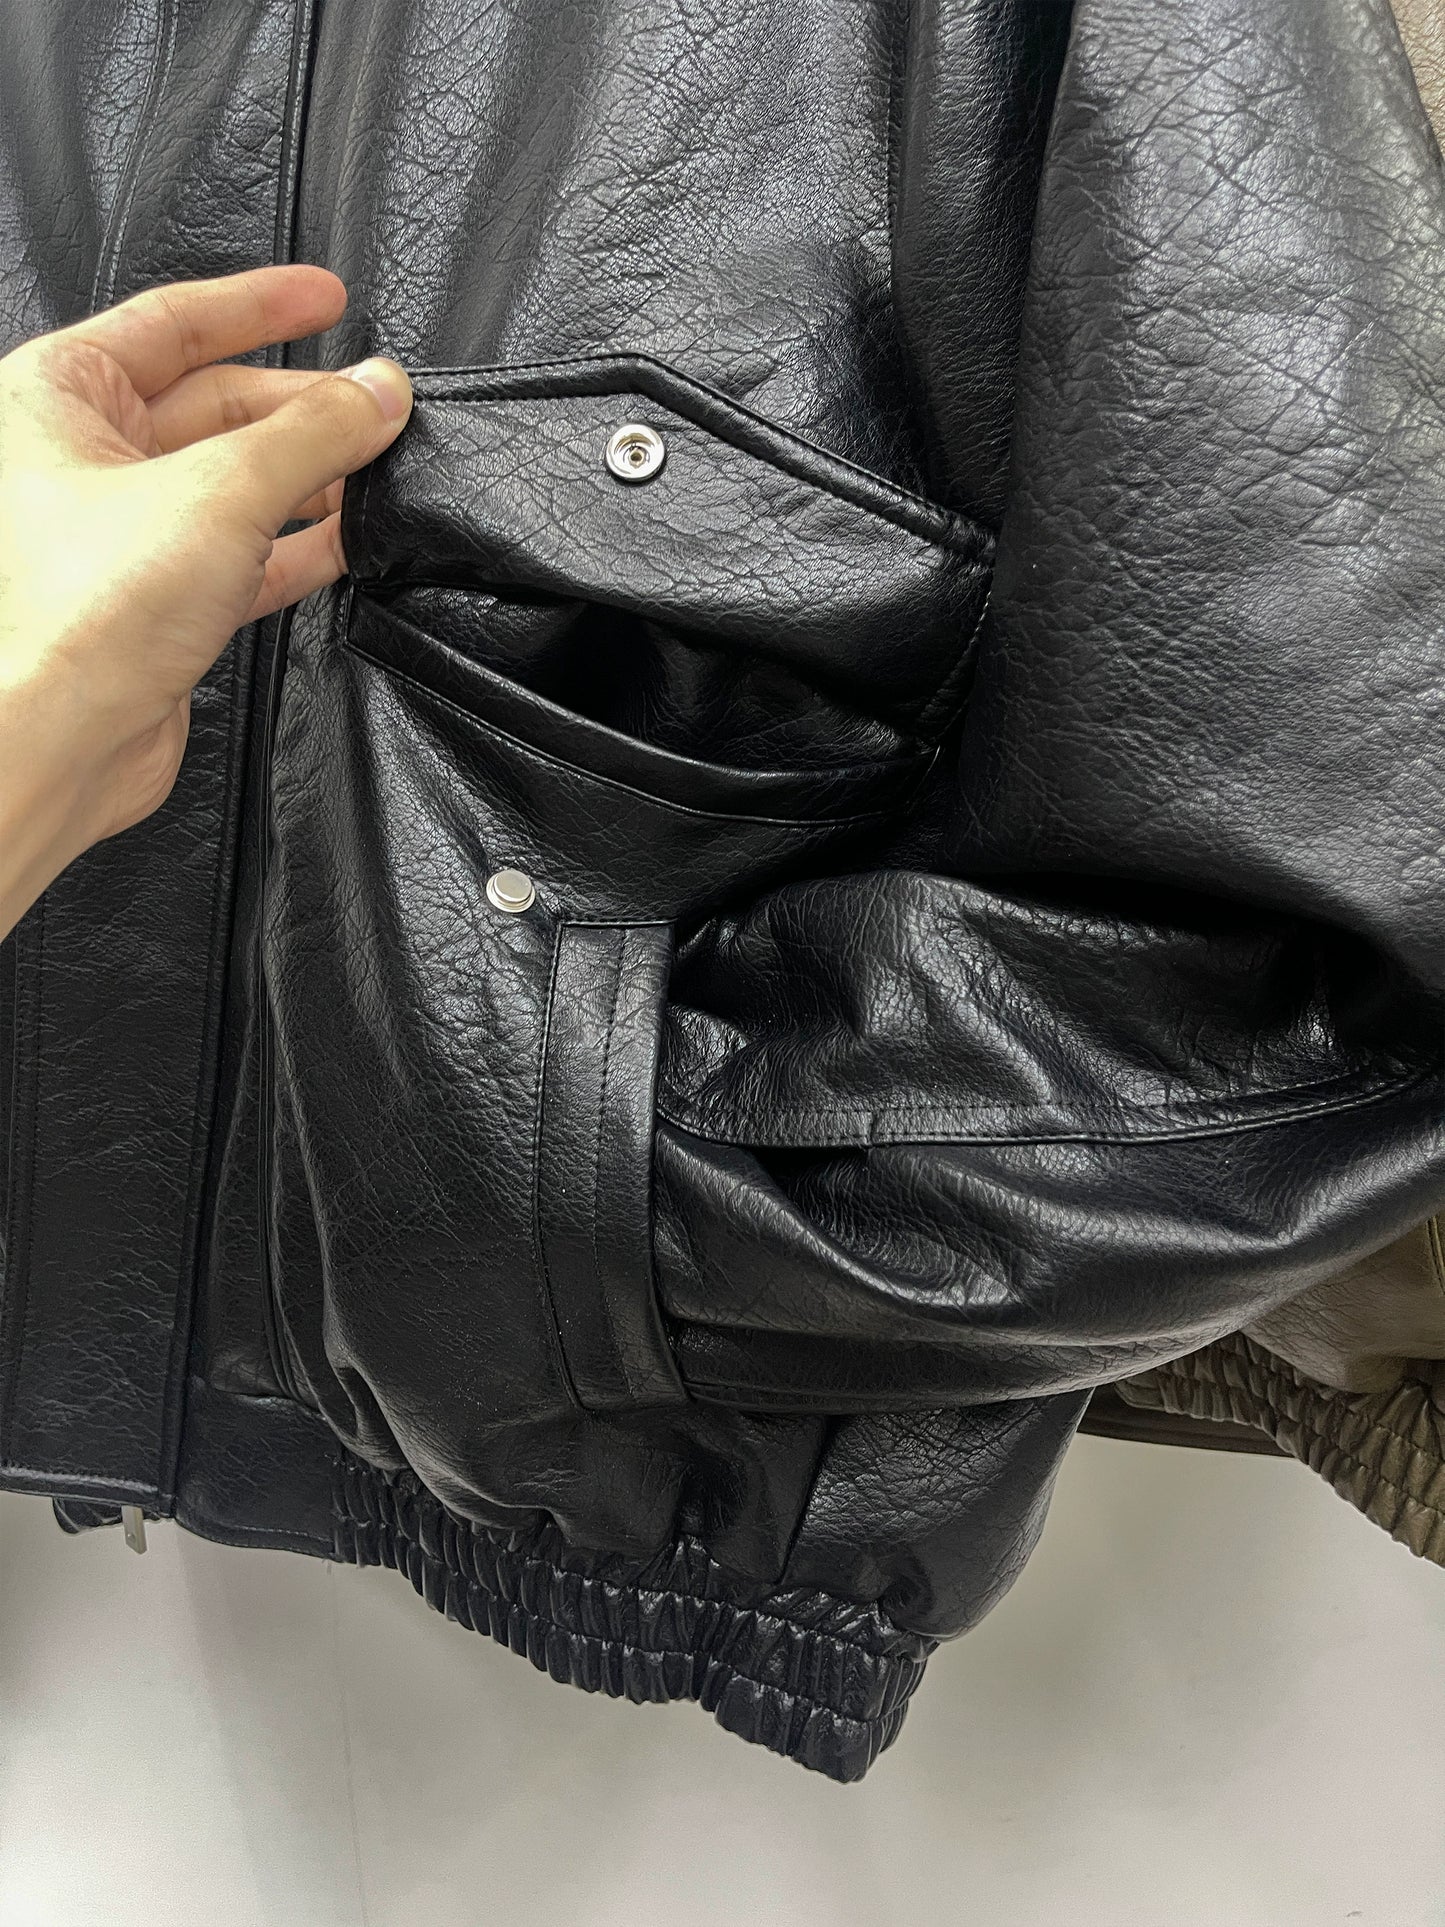 GIBBYCNA Winter Leather Jacket Men's Fashion Brand Retro Loose Cotton Jacket Thickened Warm Pu Leather Jacket